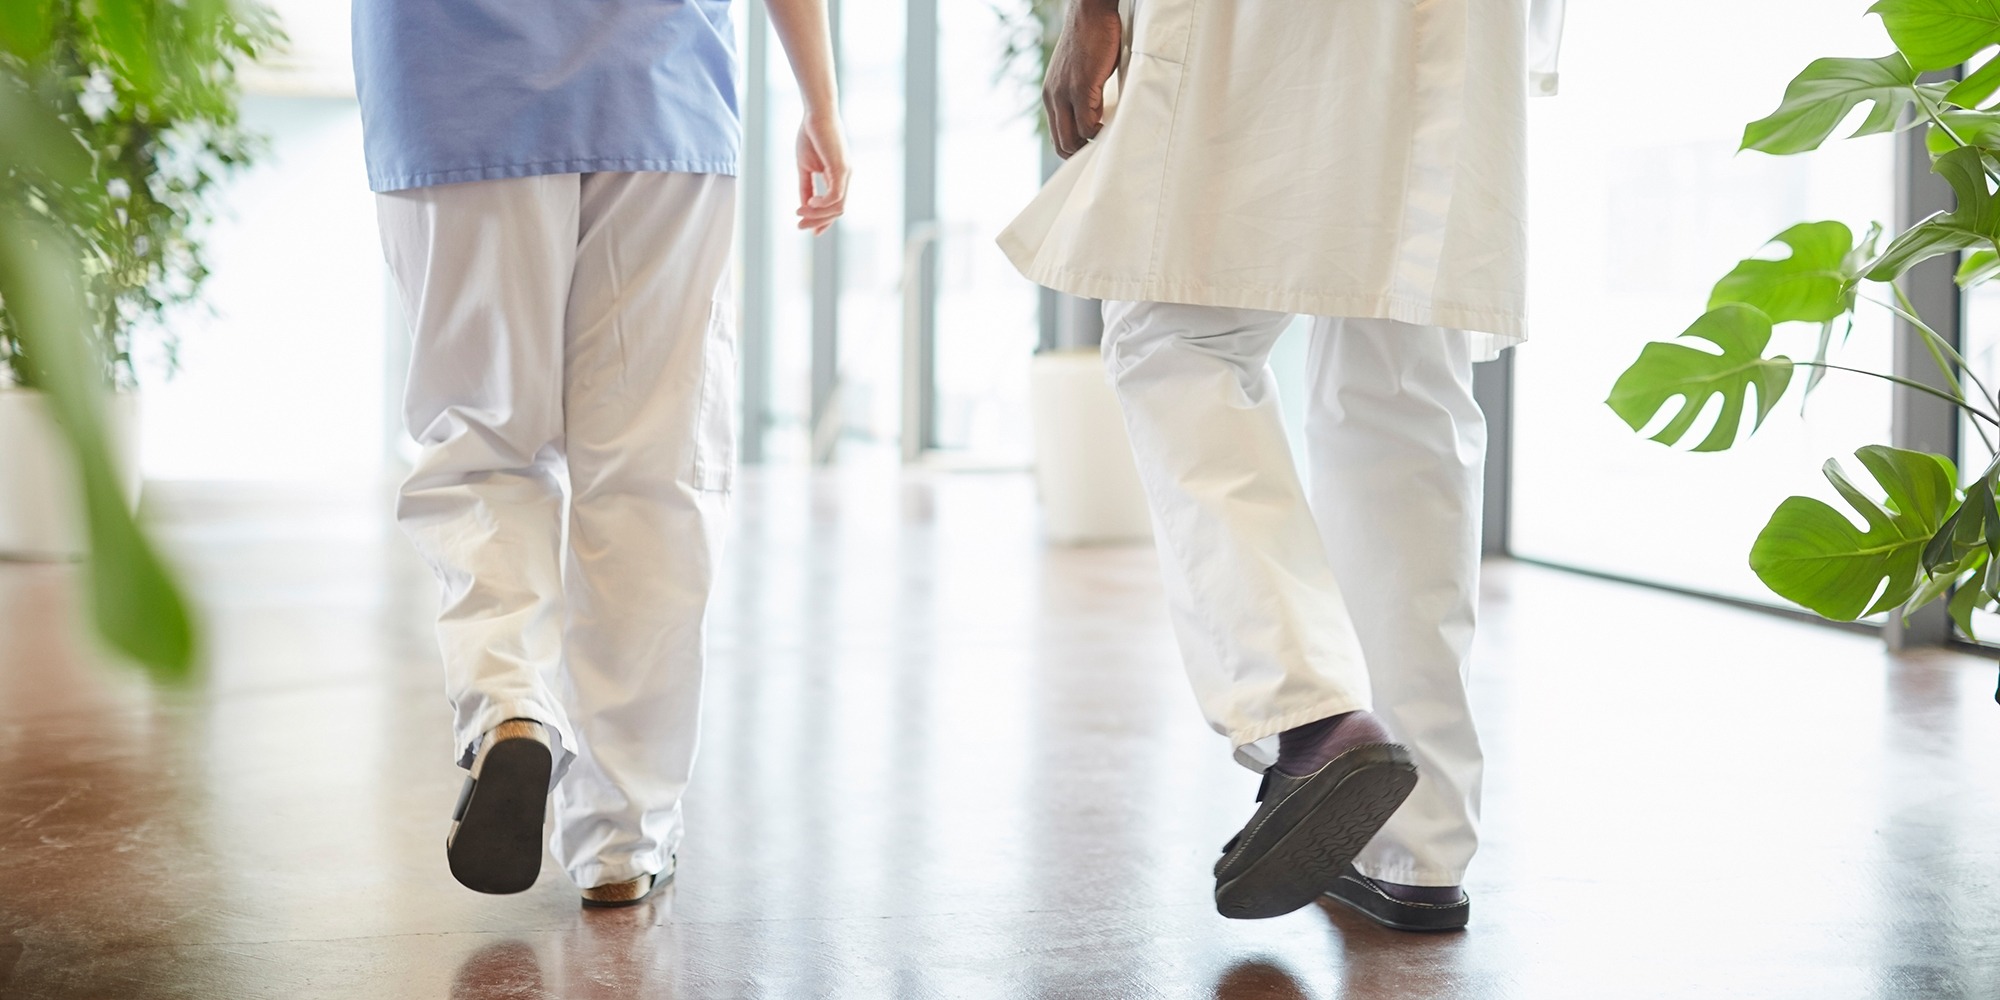 Fallolyckor. Två personer i sjukhuskläder syns bakifrån gå i en ljus sjukhuskorridor med blankt golv.